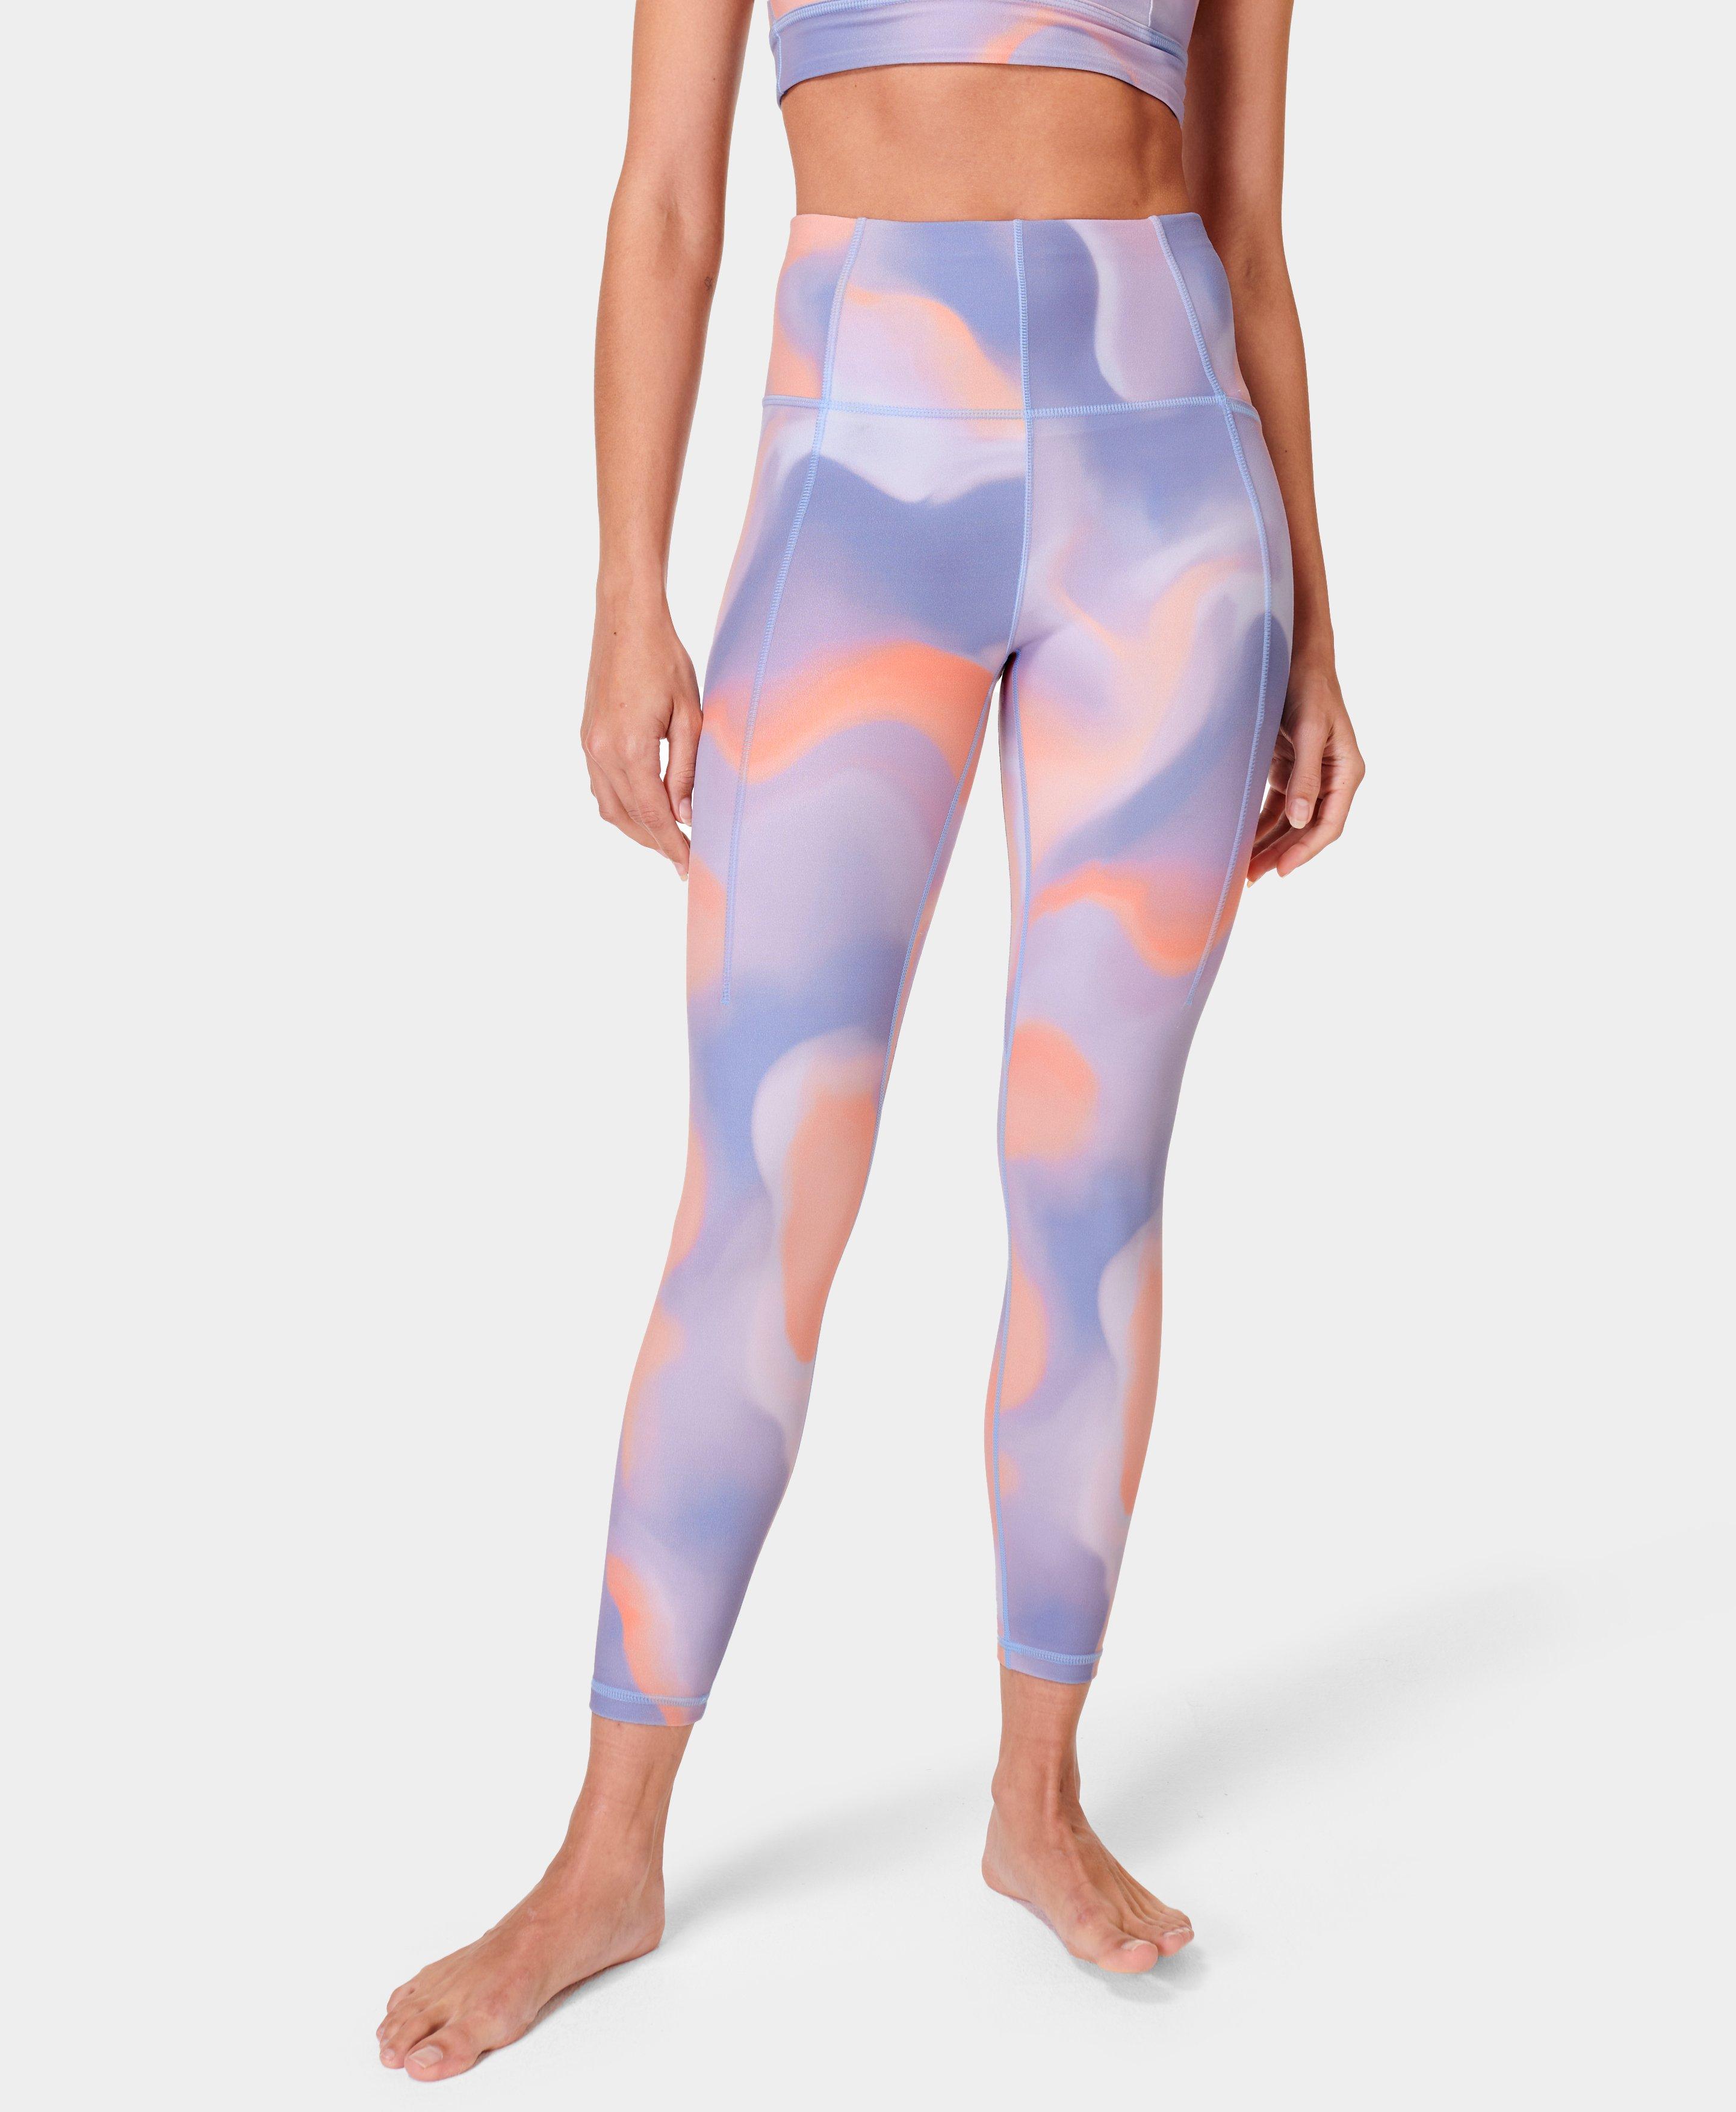 Super Soft 7/8 Yoga Leggings - Orange Cloud Print, Women's Leggings